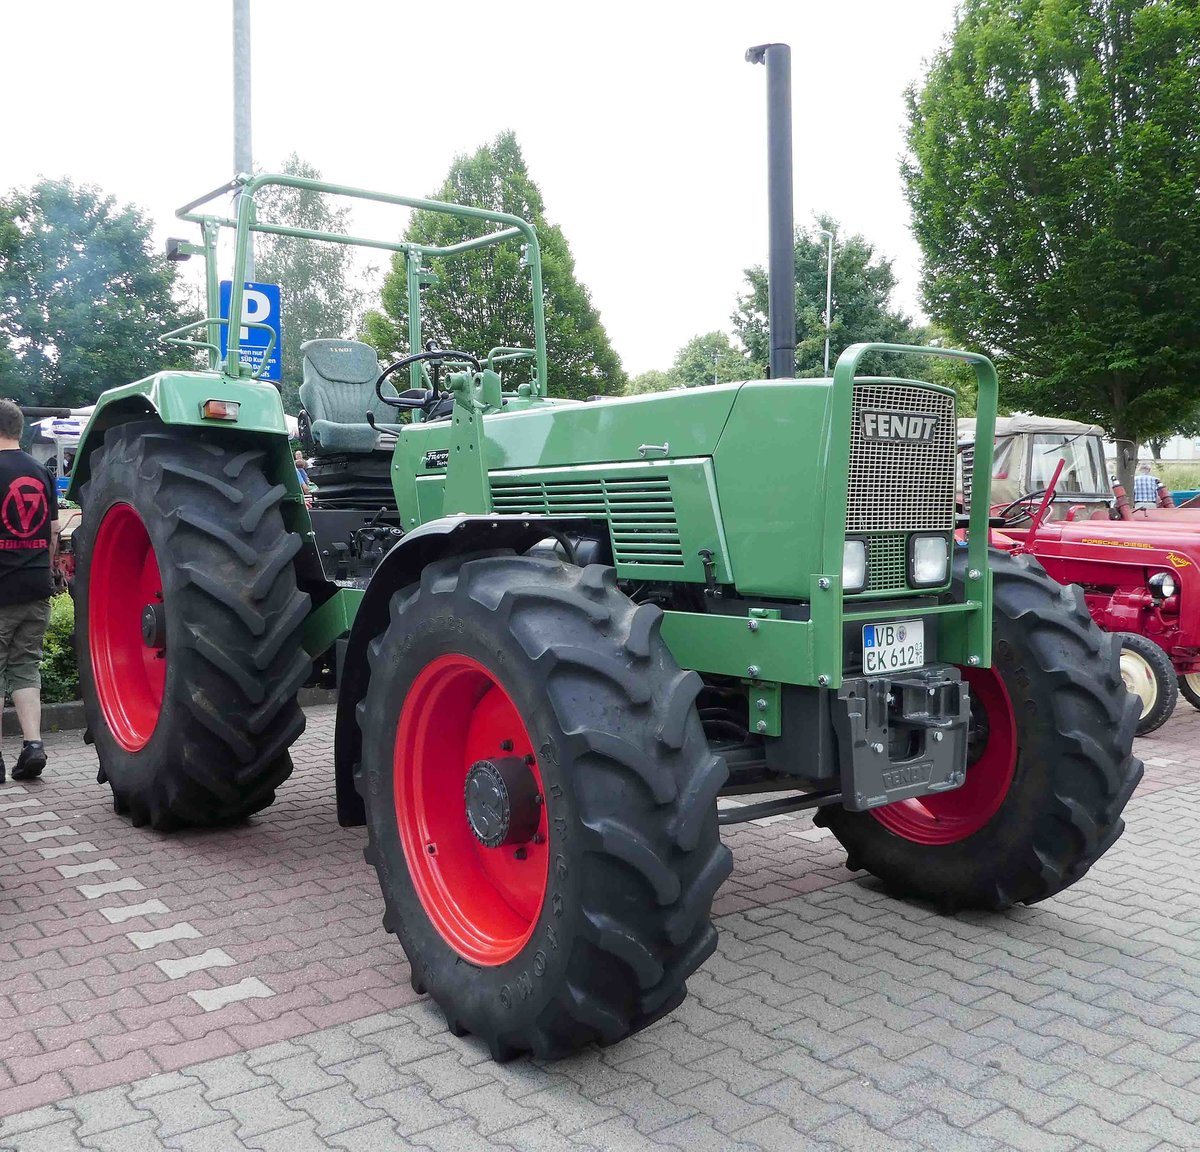 =Fendt Farmer steht bei der Traktorenausstellung  Ahle Bulldogge us Angeschbach oh Lannehuse  in Angersbach im Juni 2018